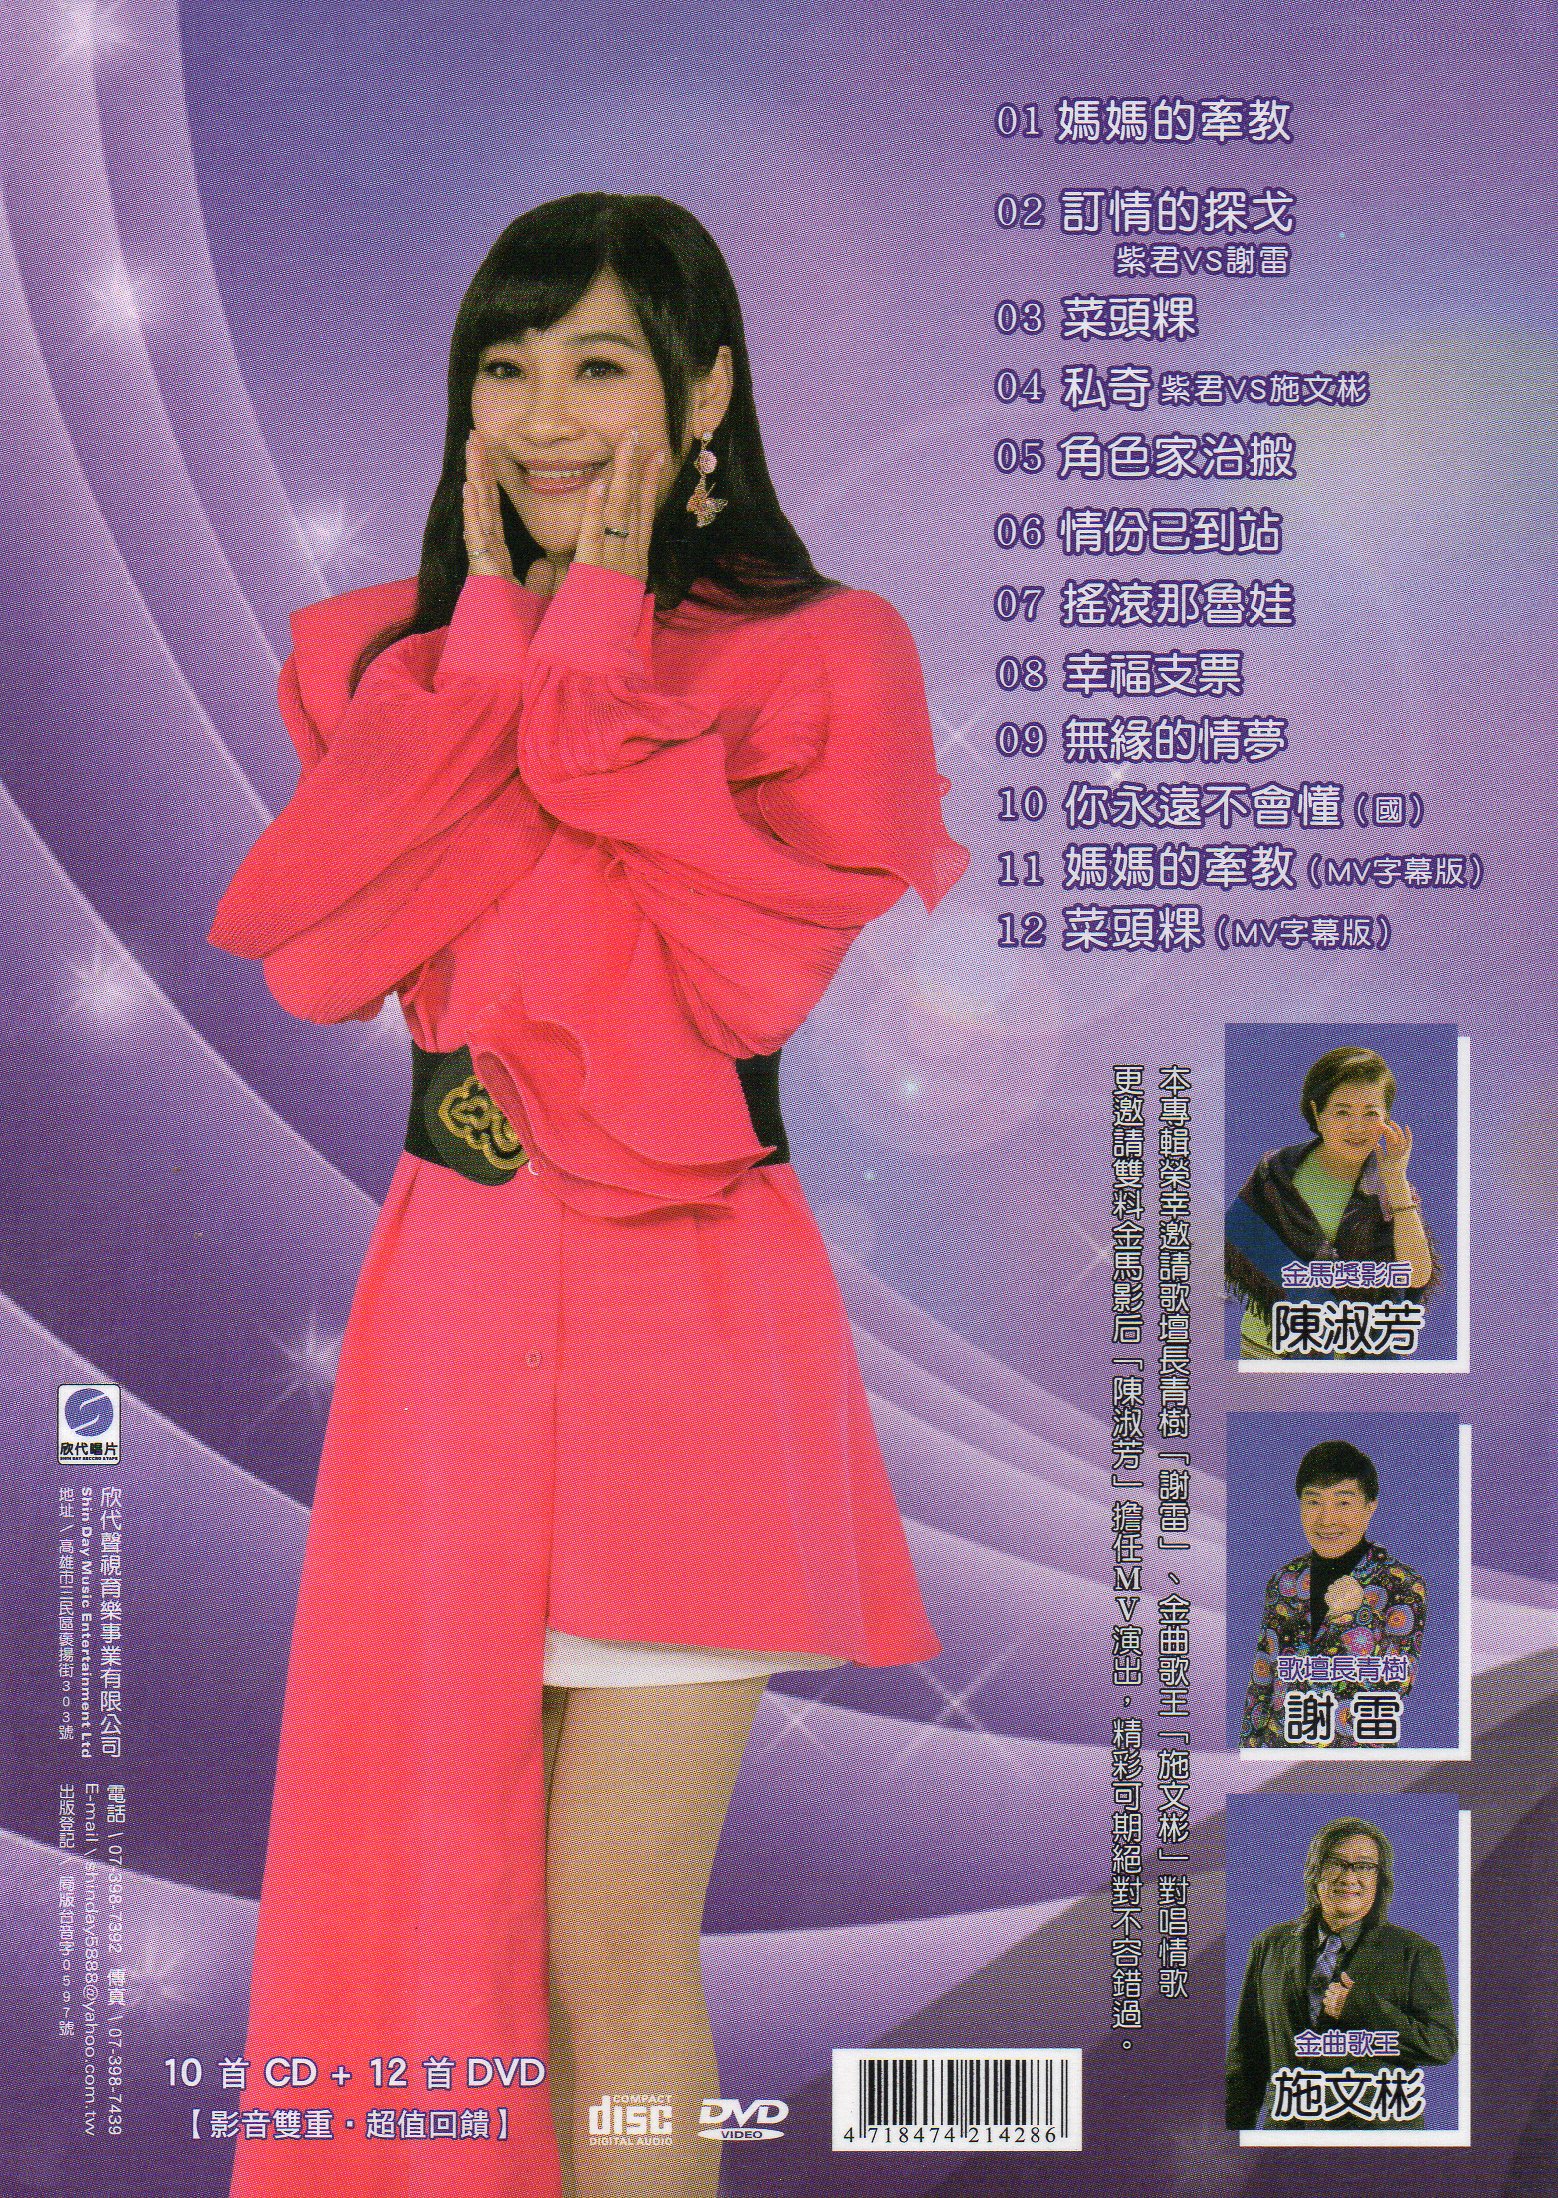 紫君-媽媽的牽教CD(欣代)(mega) MI1619673448